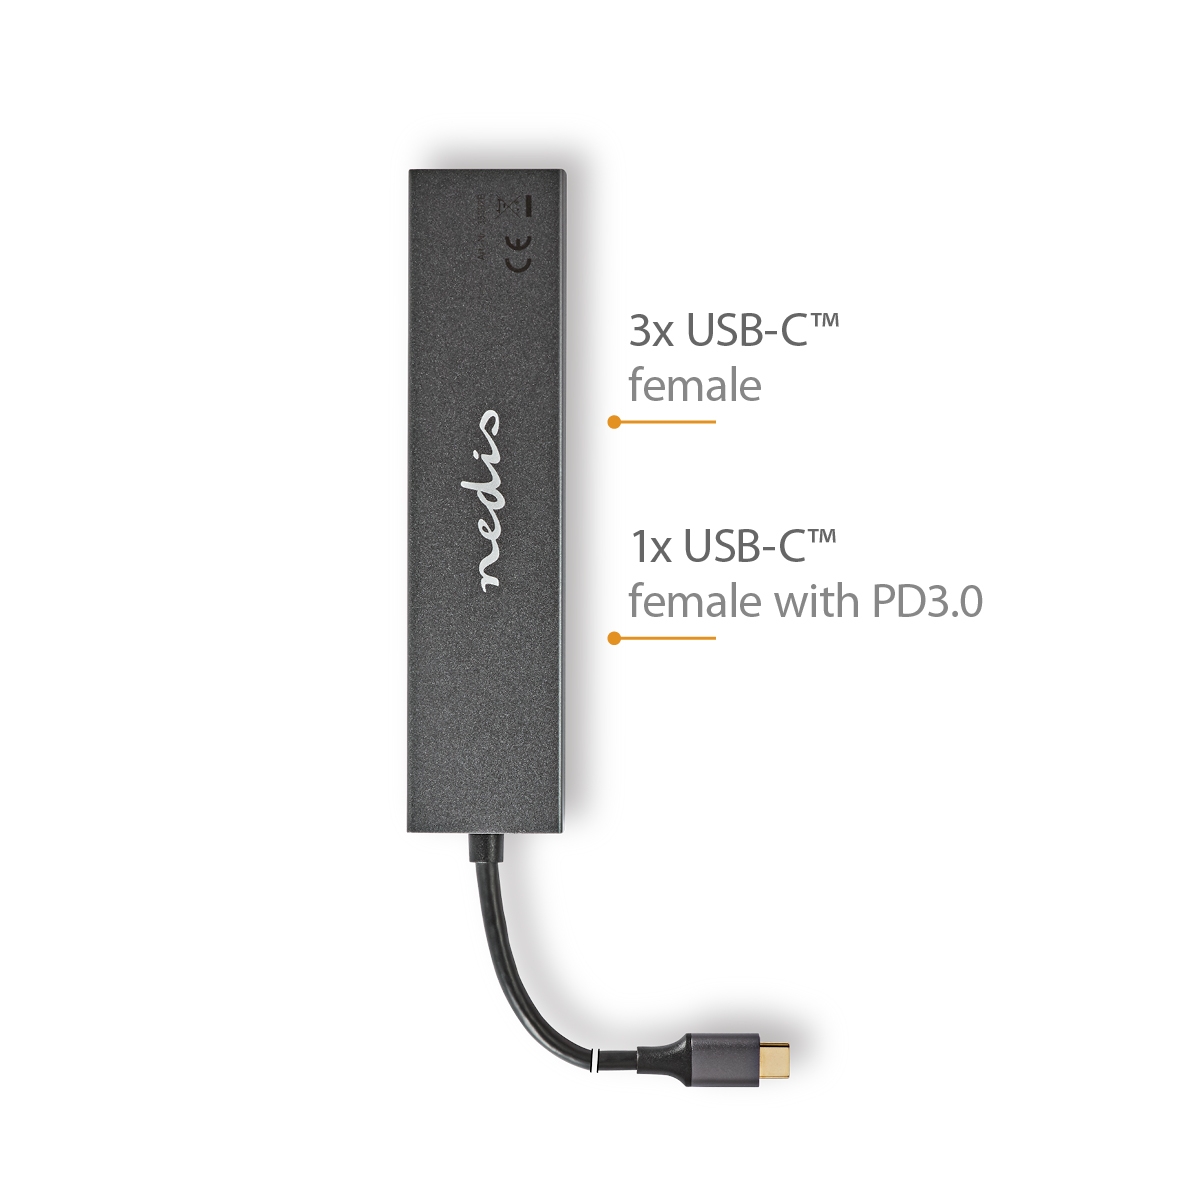 UHUBU3470AT NEDIS USB-Hub